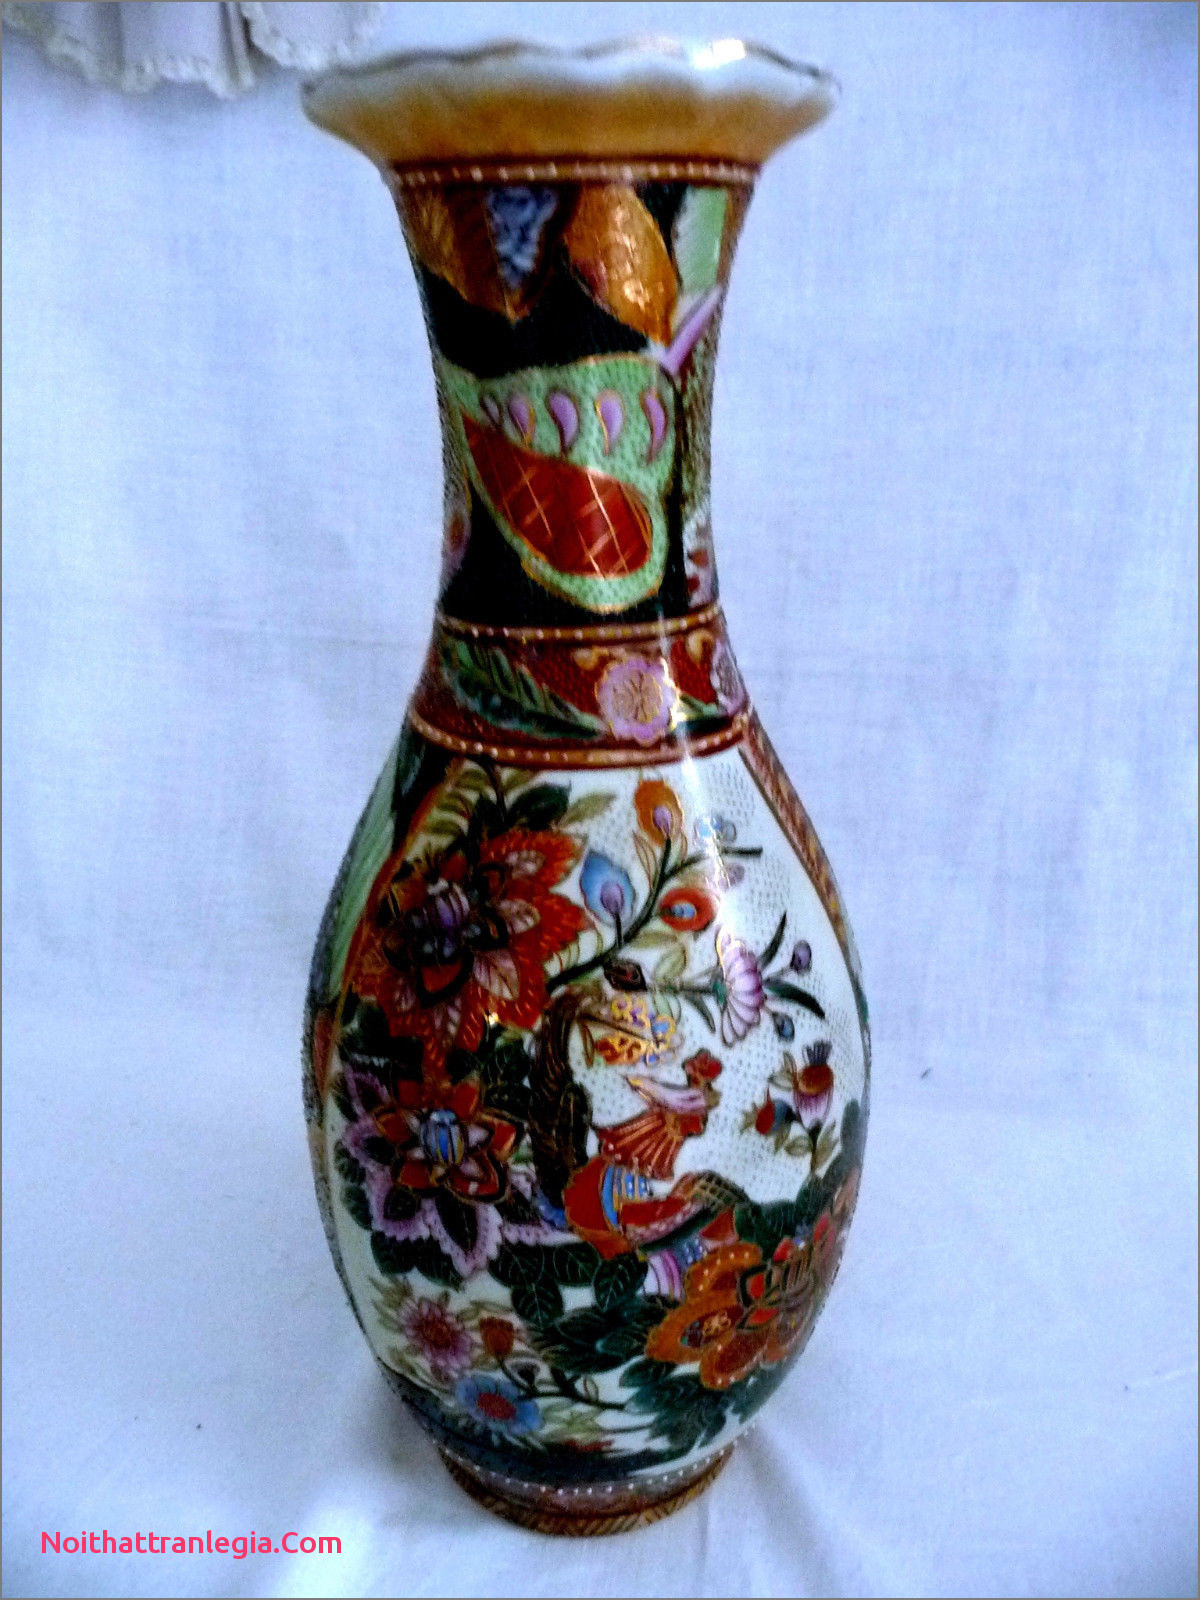 Antique Japanese Vases Marks Of 20 Chinese Antique Vase Noithattranlegia Vases Design with Regard to 1 Von 11 Siehe Mehr Aus Nachlass Prachtvolle Antike 38cm Grosse Vase Aus Japan Od From Chinese Antique